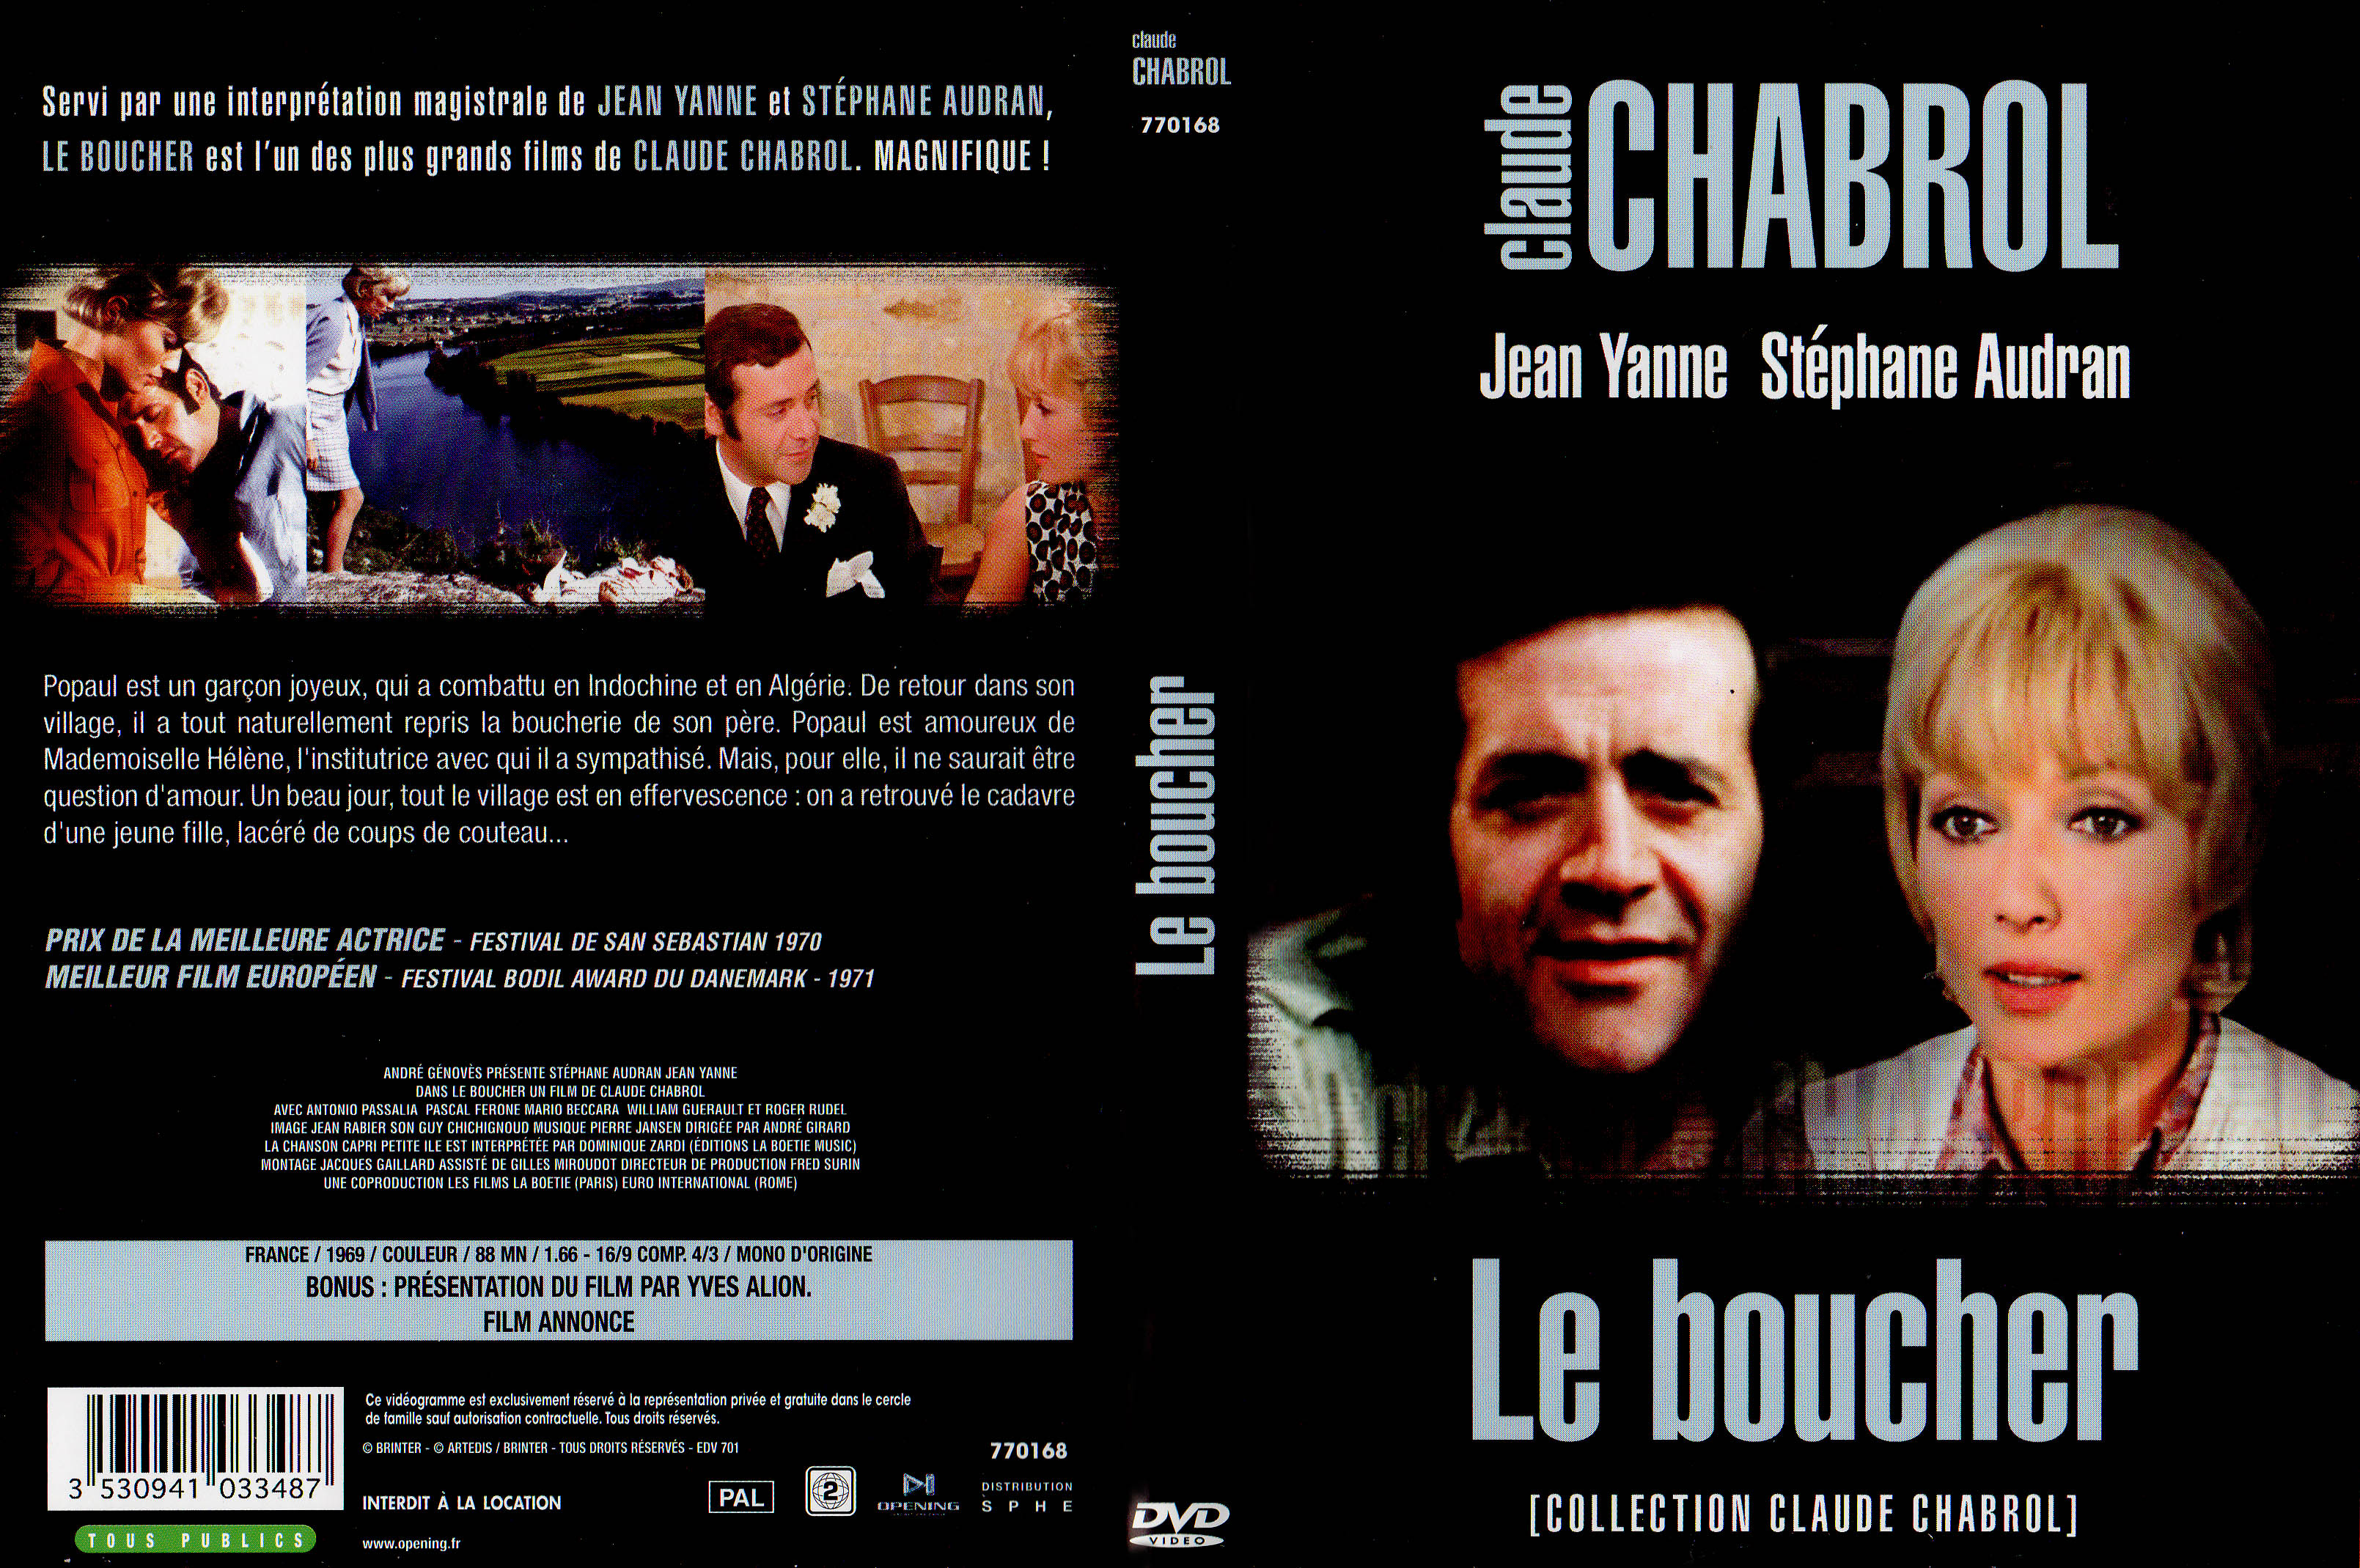 Jaquette DVD Le boucher v3